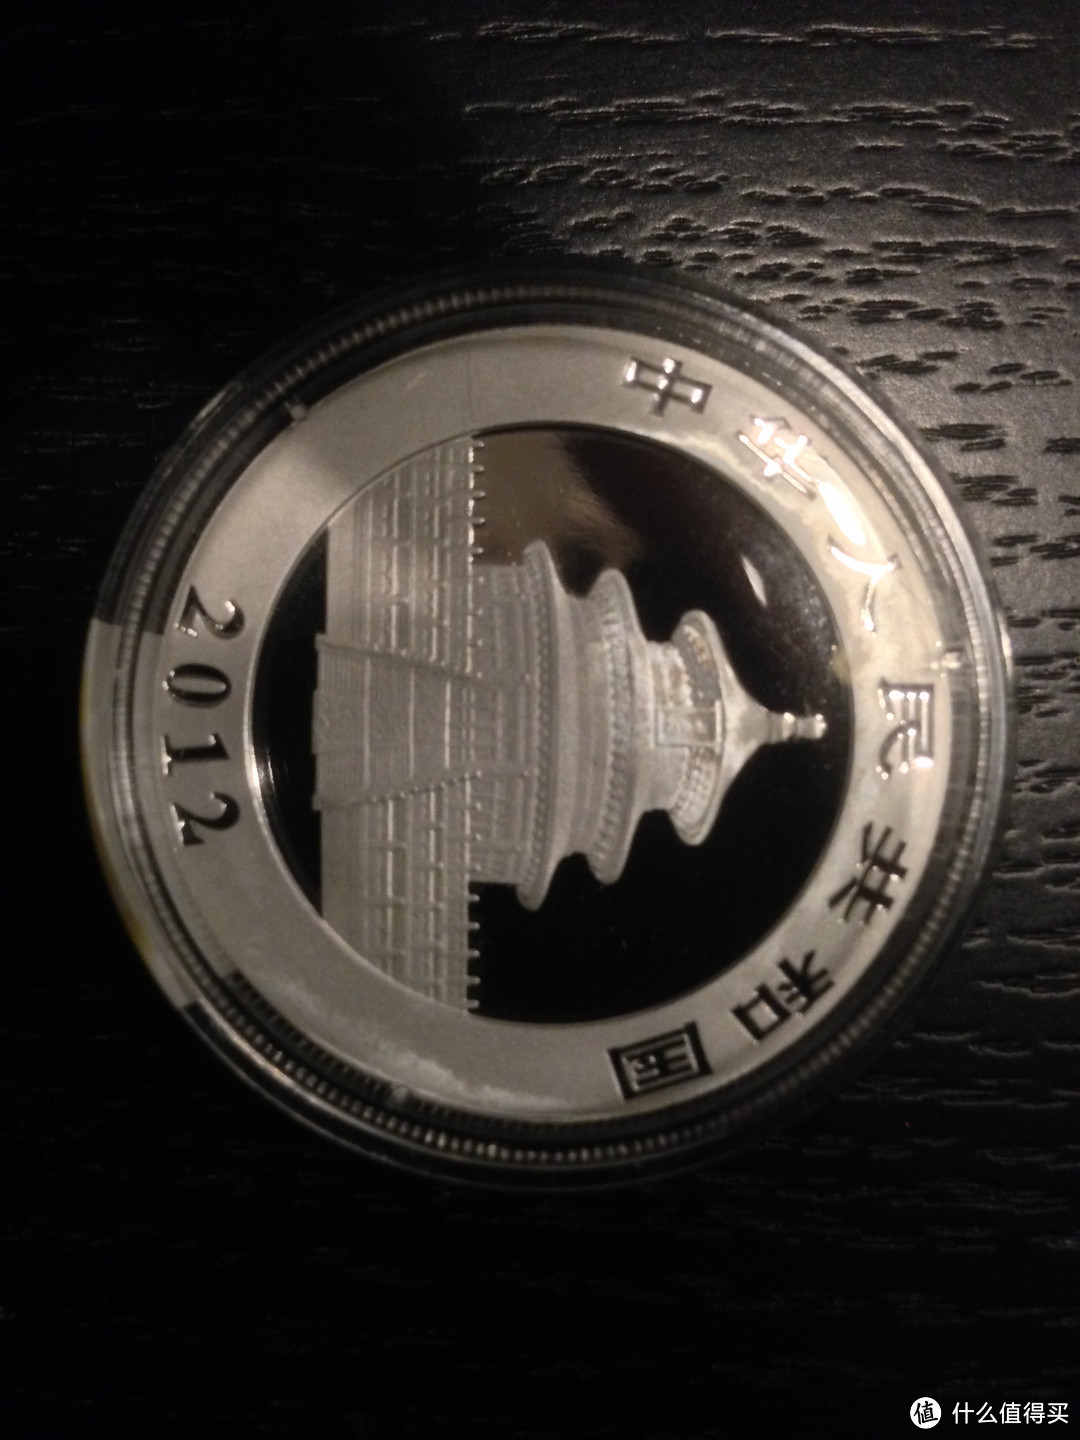 2012年熊猫银币，小熊猫是不是很萌呀，哈哈。